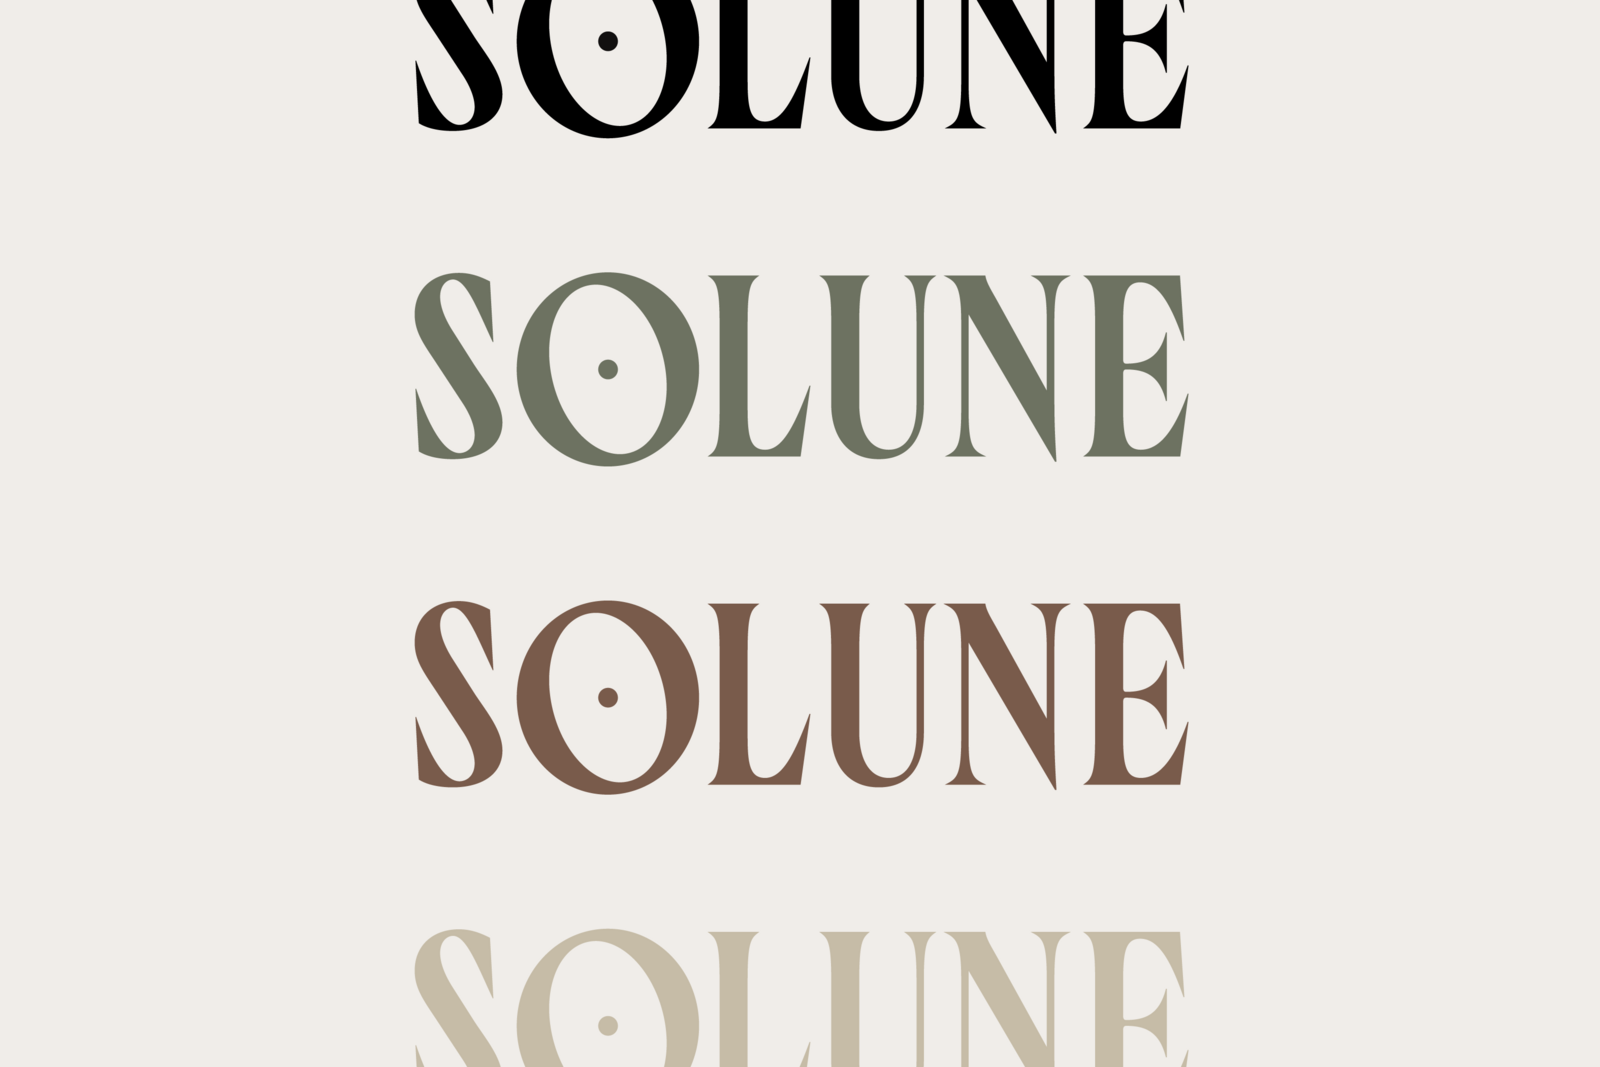 Solune-Portfolio-02